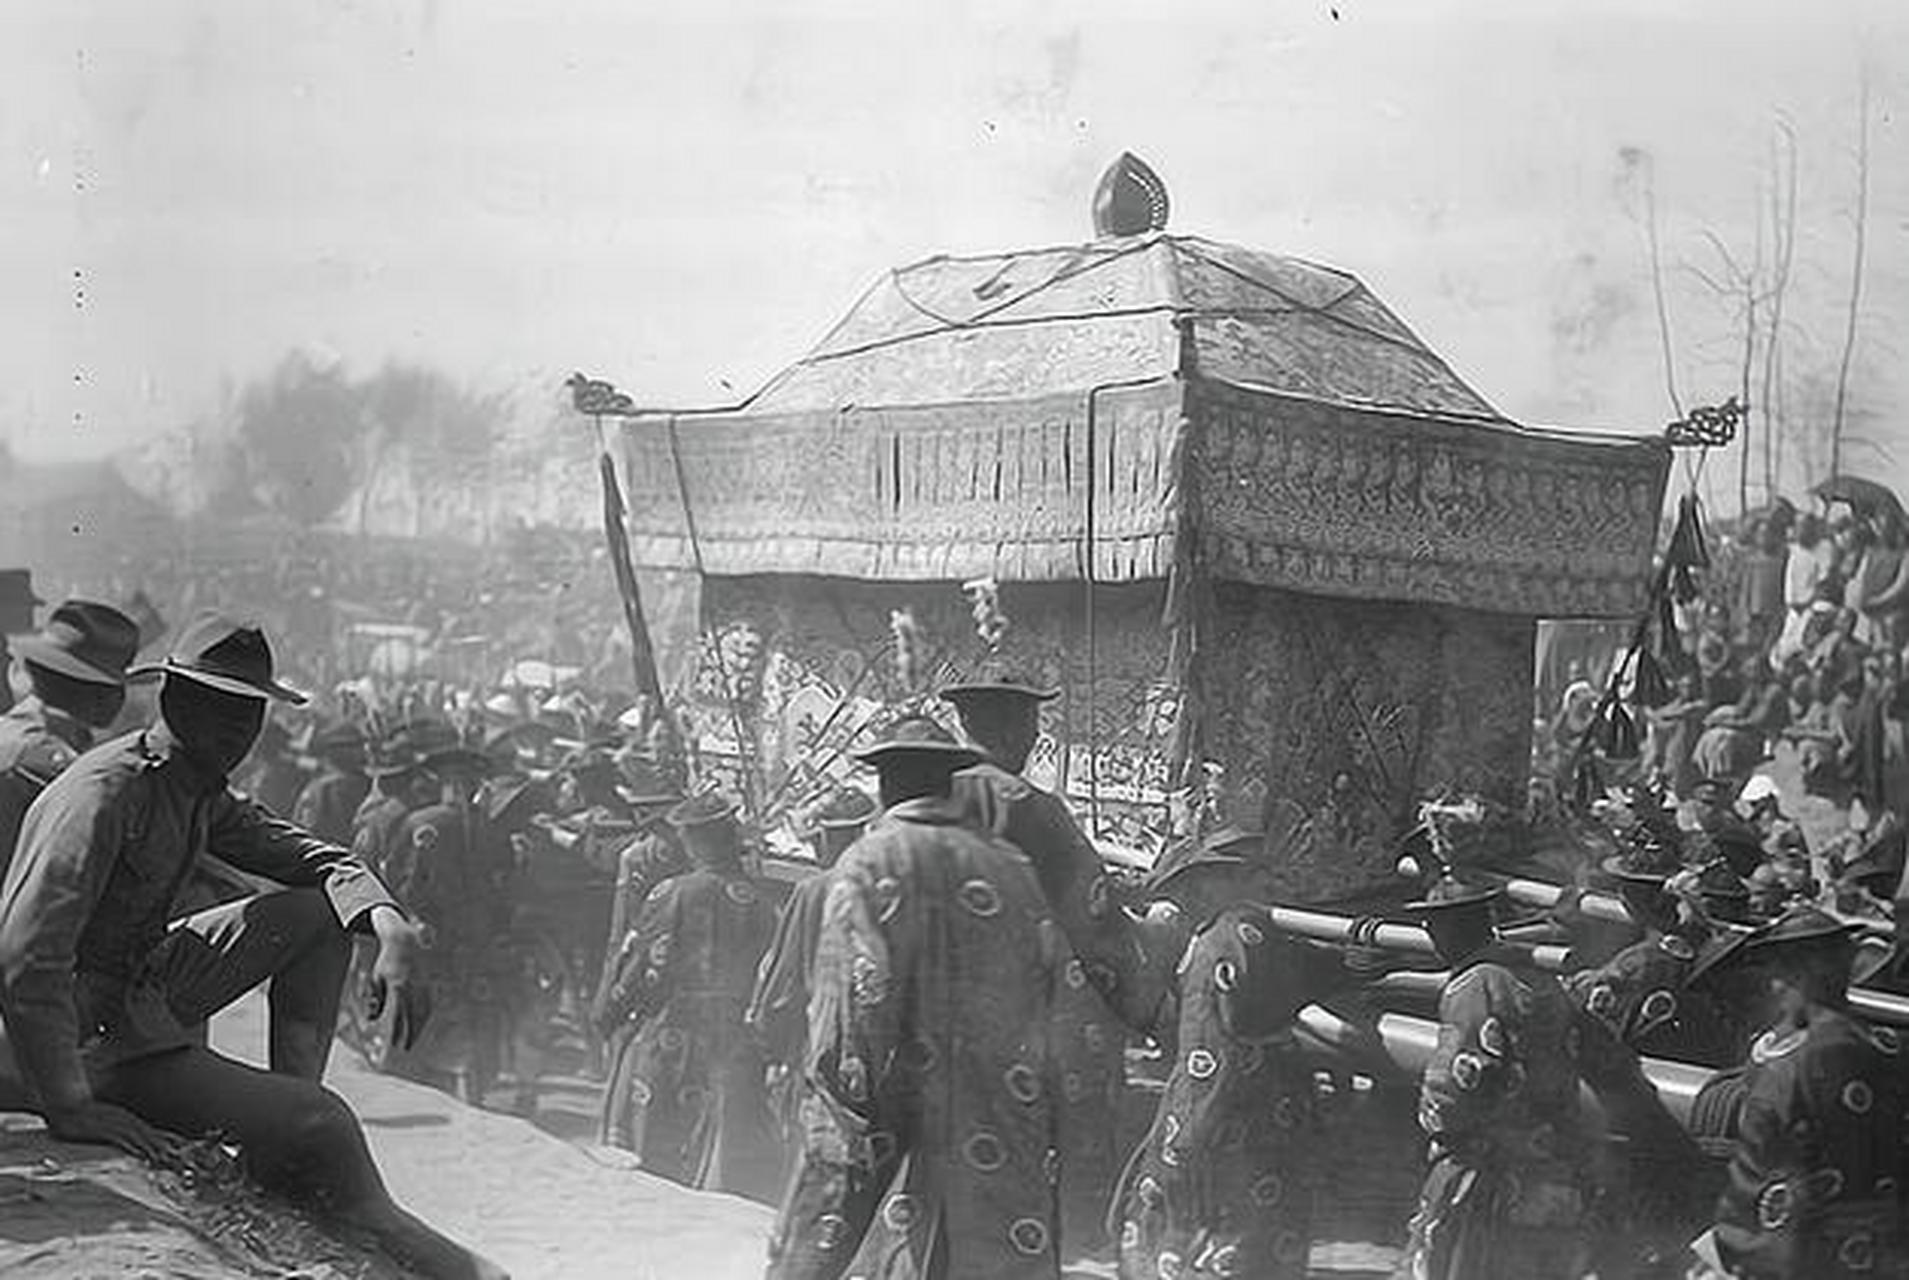 这张照片是记录1908年光绪皇帝葬礼的,照片显示光绪皇帝在慈禧太后